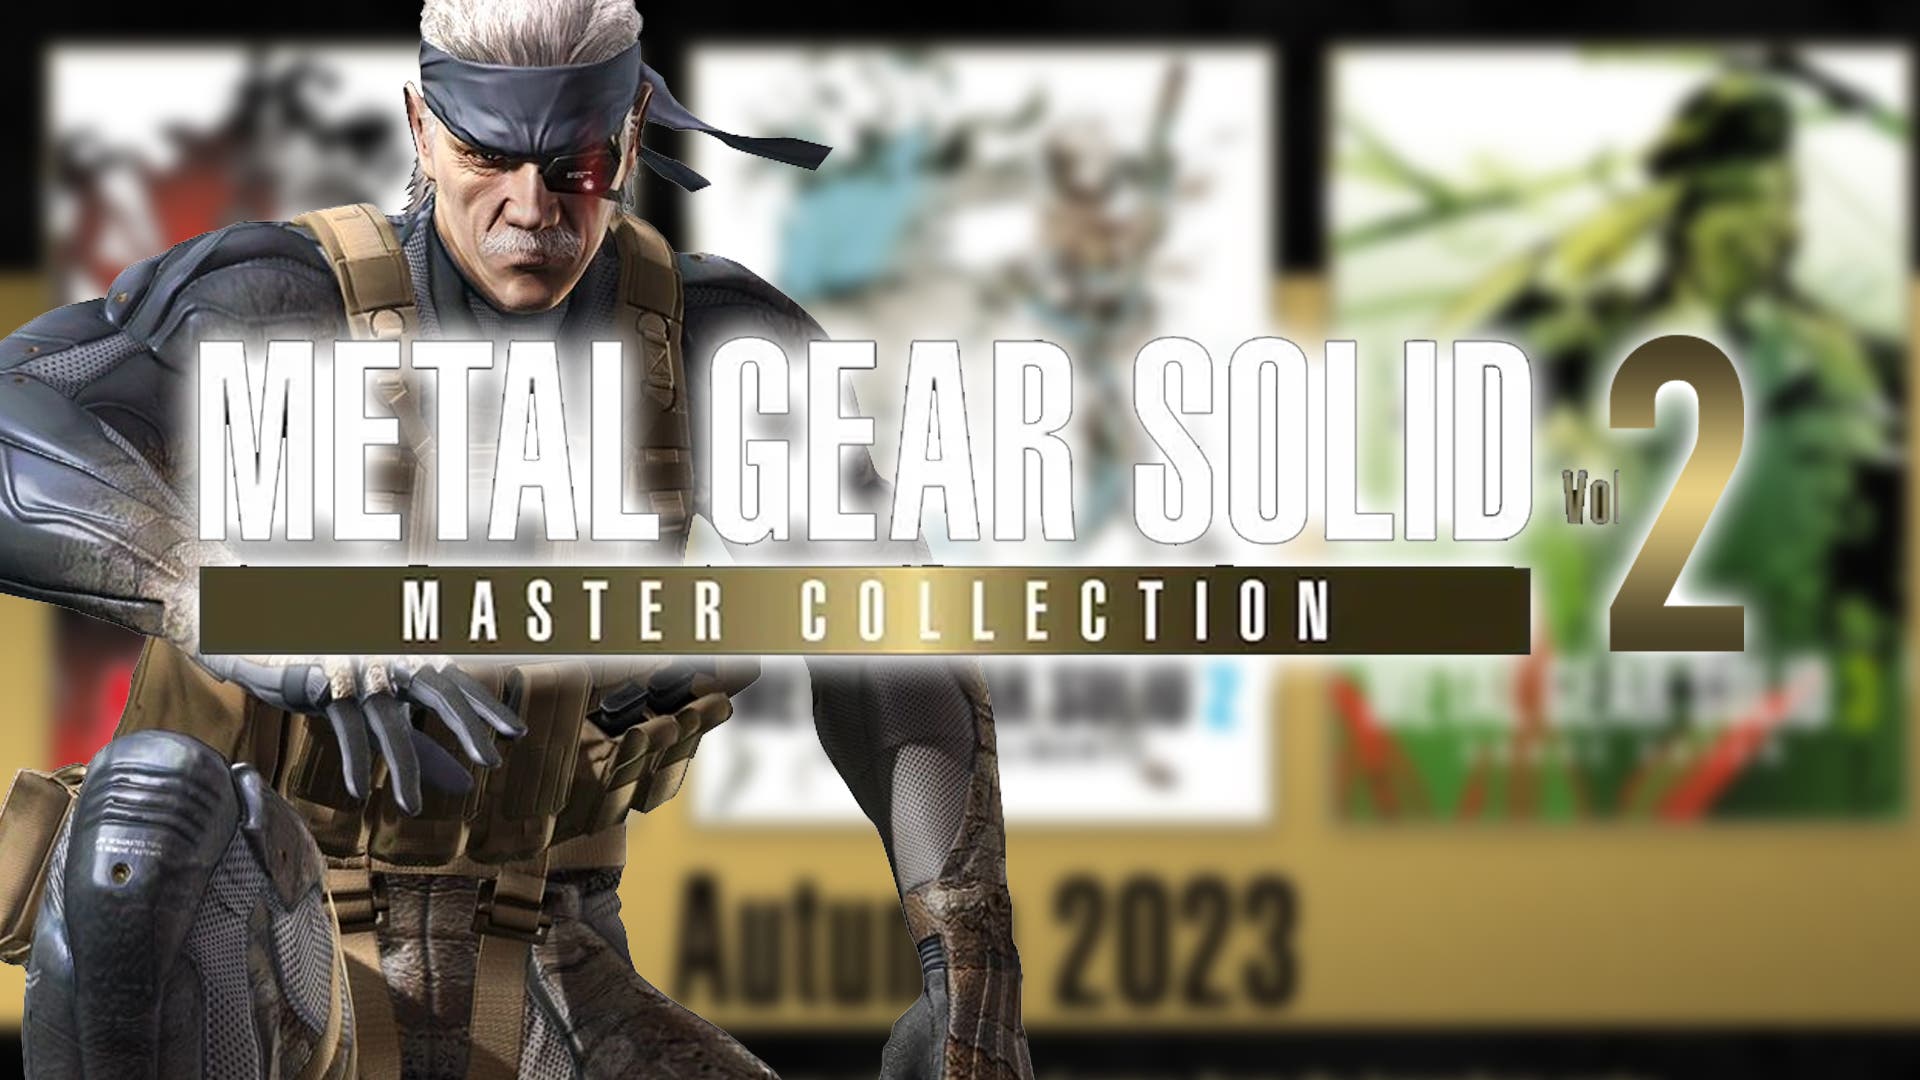 Rumor: Parece haber un Vol. 2 de Metal Gear Solid: juegos incluidos y más  detalles - Nintenderos